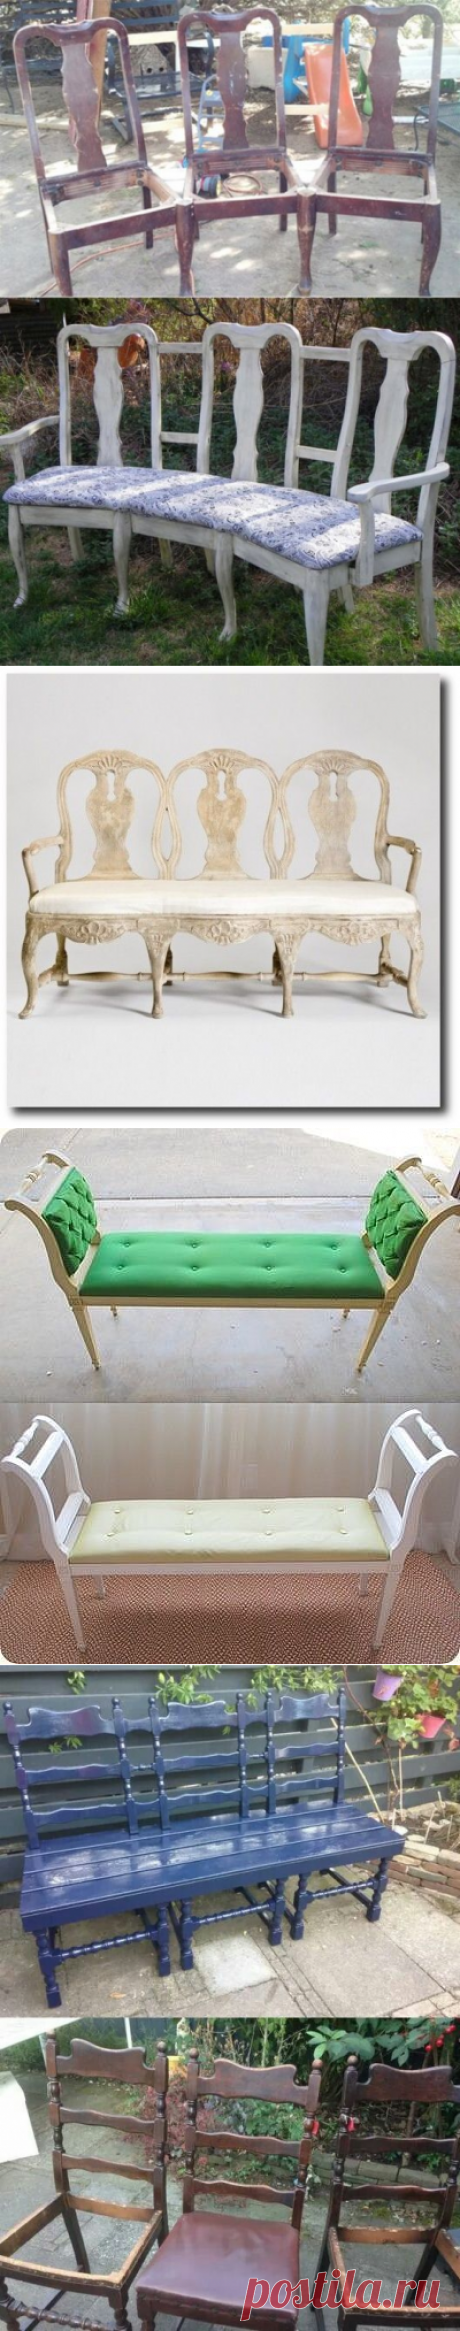 Как из стульев сделать канапе или скамейку. Идеи для декора и вдохновения. | Юлия Жданова | Яндекс Дзен